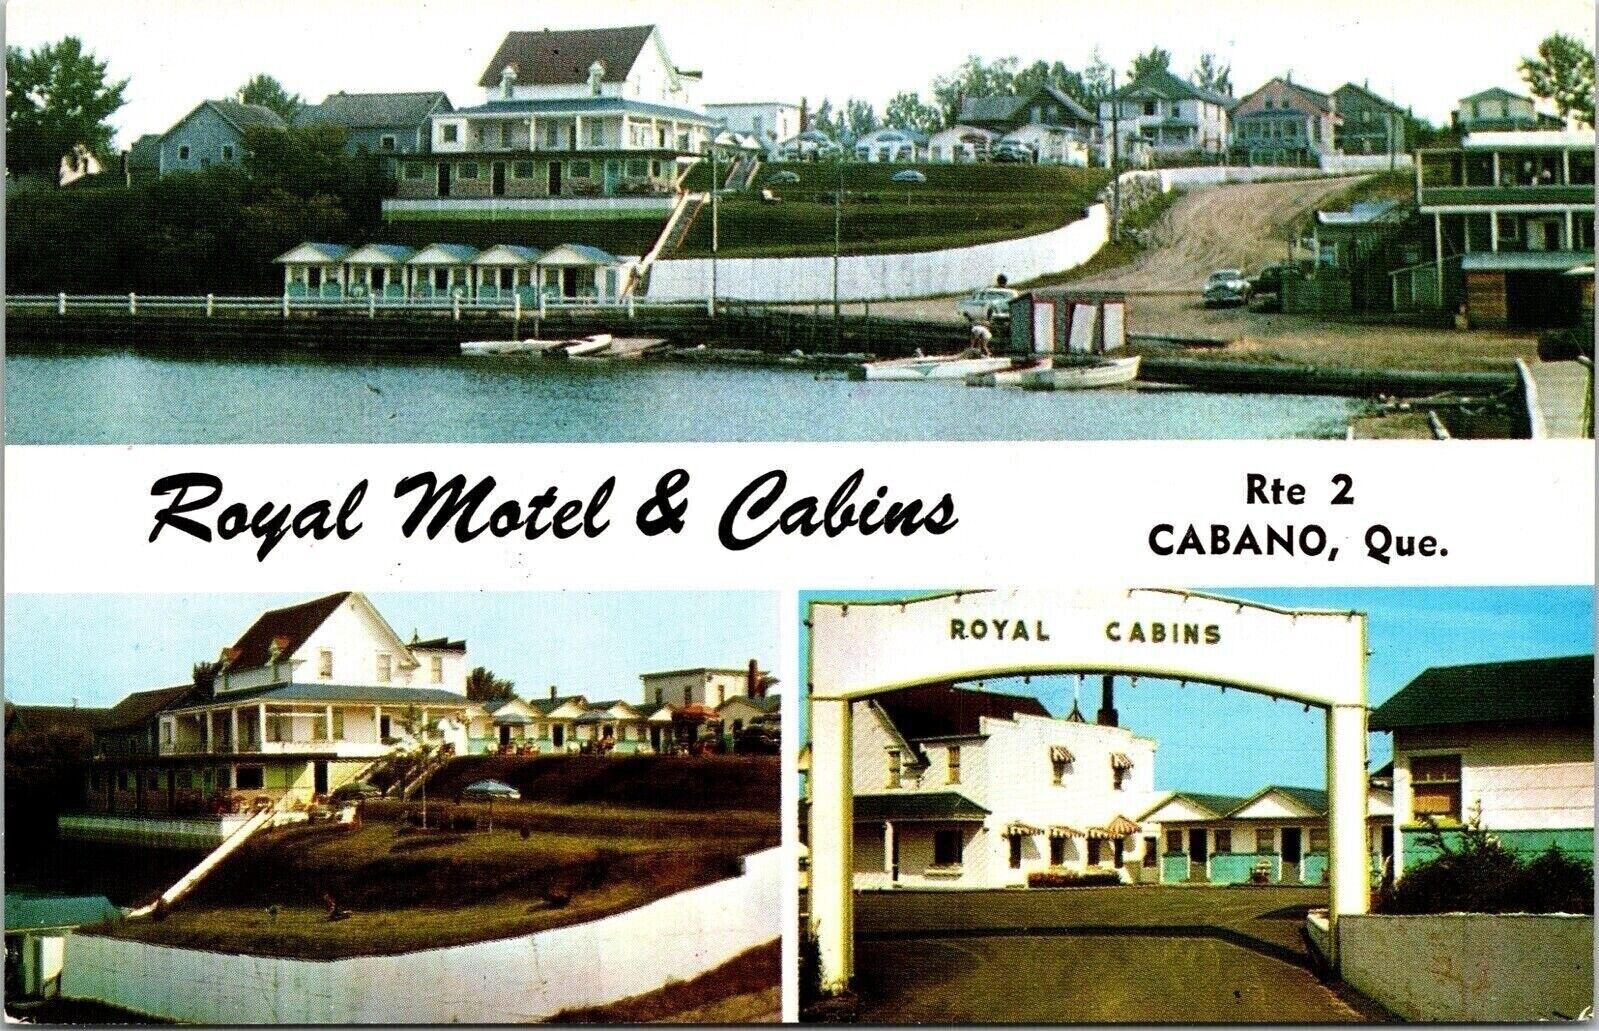 Royal Motel & Cabins Multi View Cabano Quebec Canada Chrome Postcard